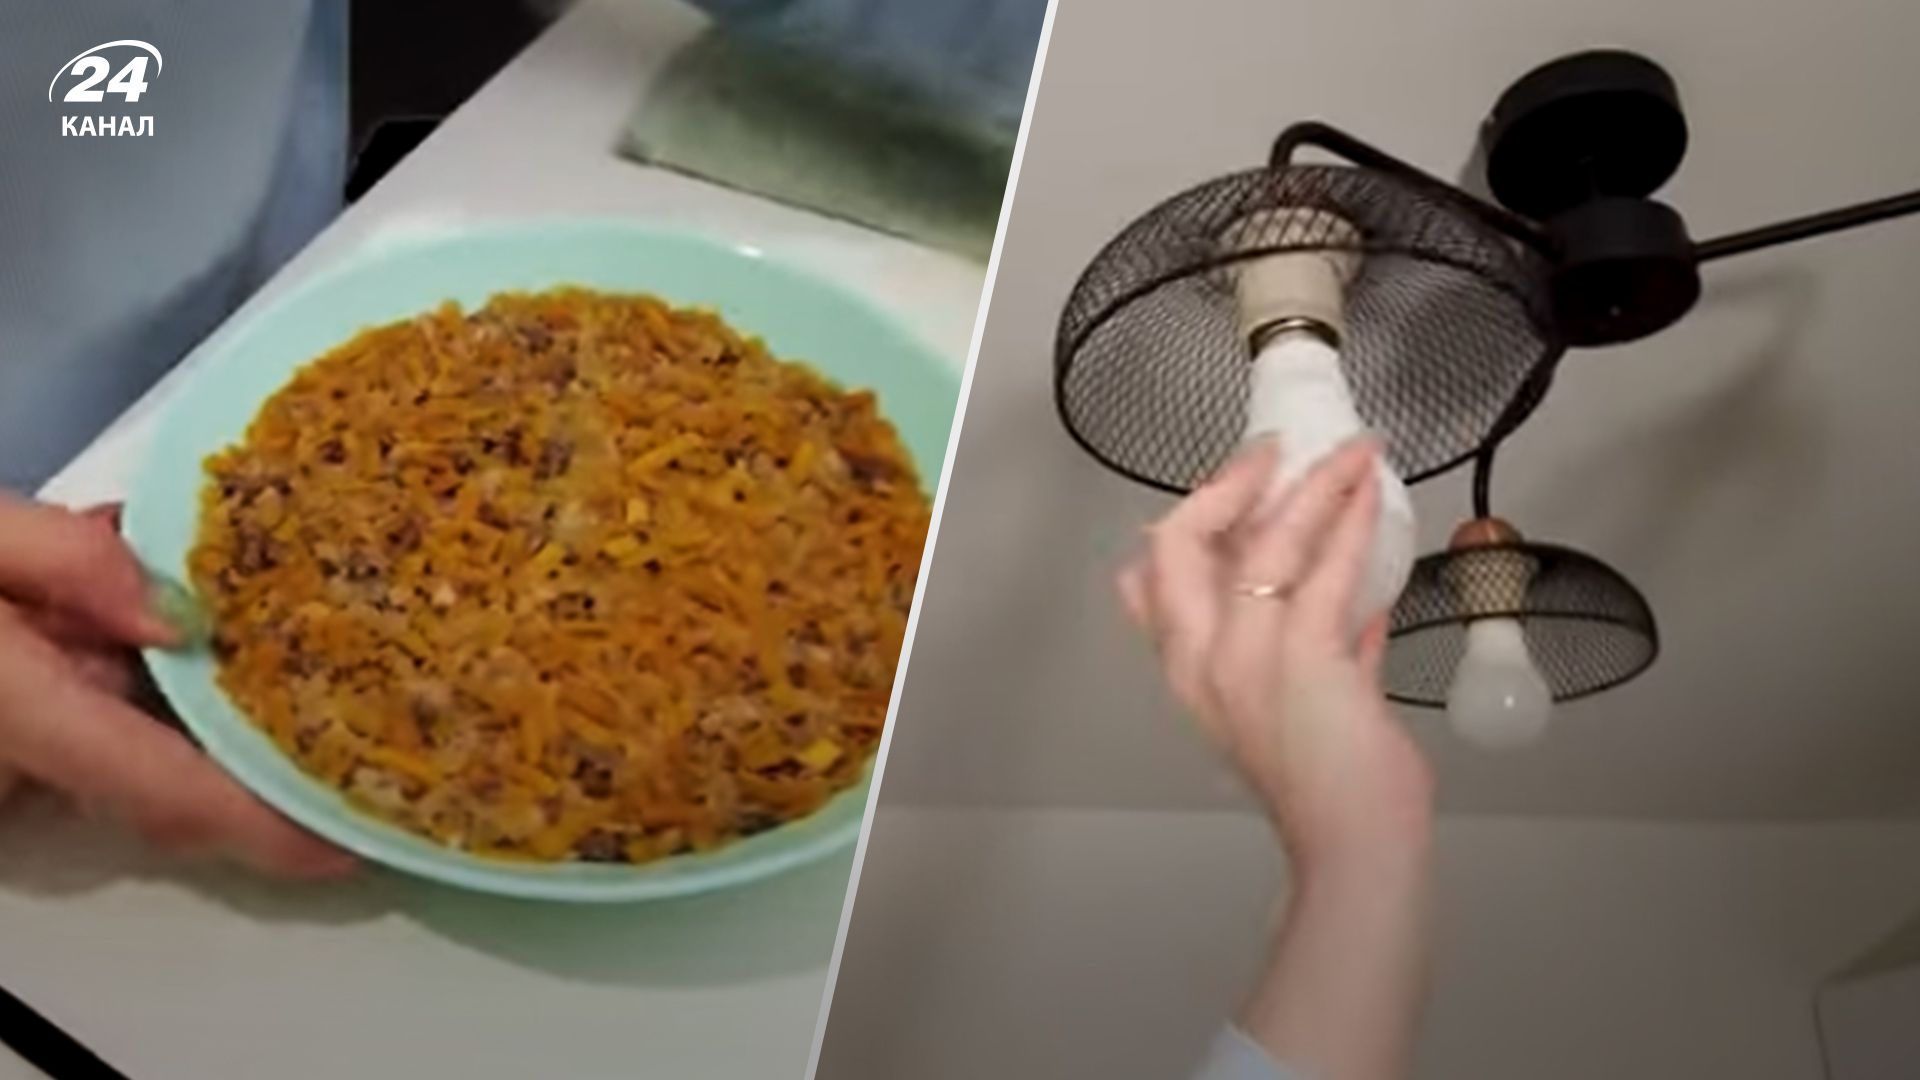 Екатерина Мищенко приготовила сублимированную гречку на горелке и испытала аварийную лампу